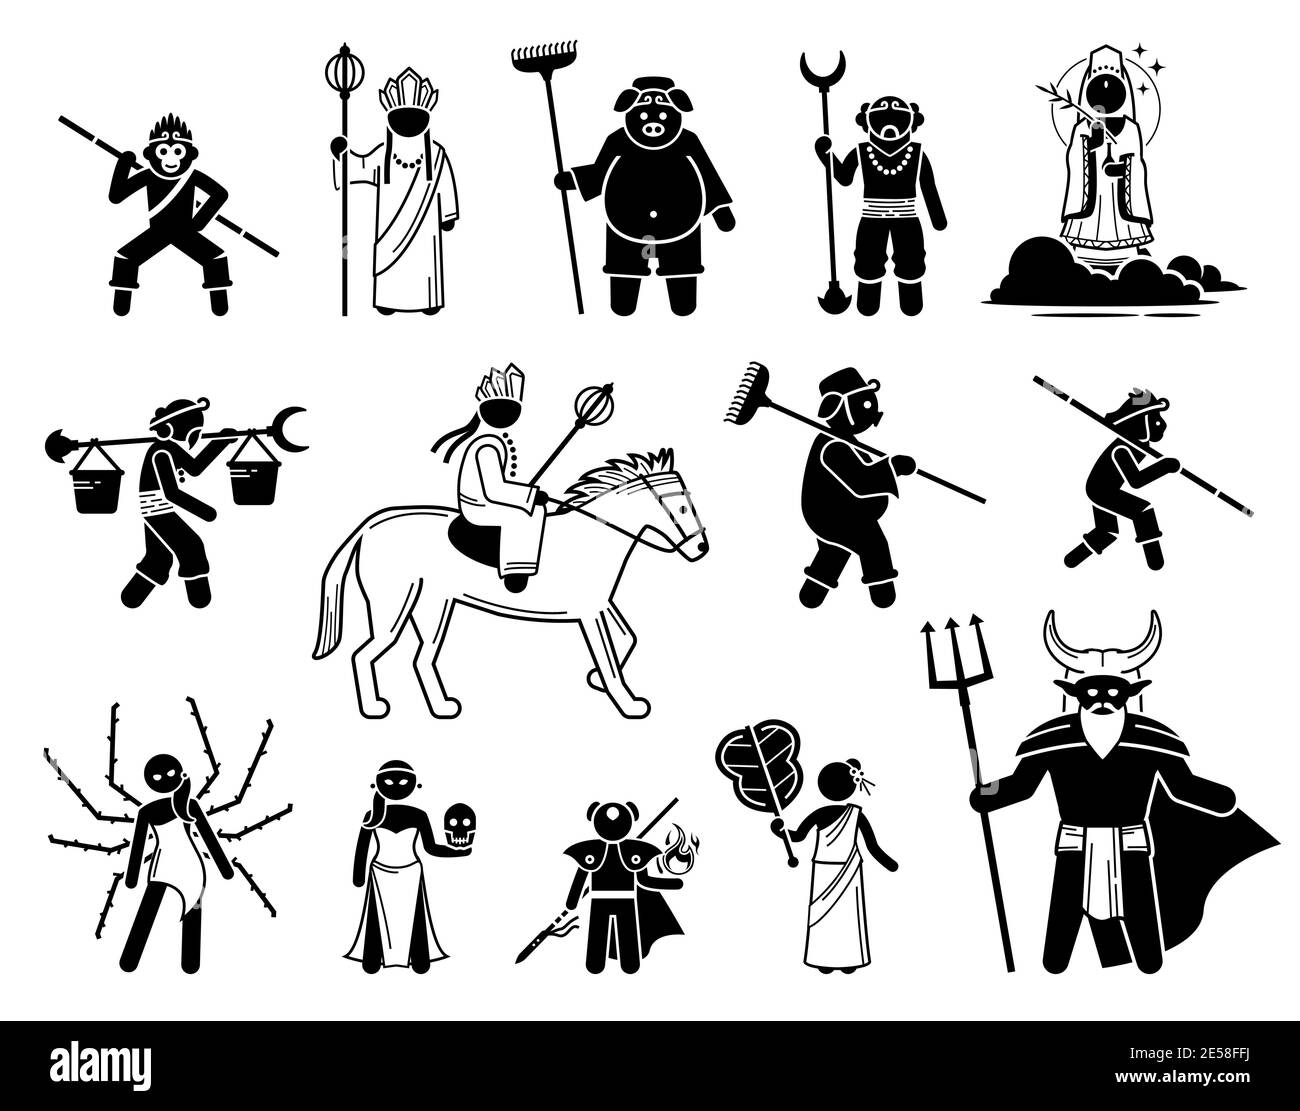 Reise in den Westen Charaktere Symbole gesetzt. Vektor-Illustrationen von legendären Helden und Schurken der chinesischen Mythologie. Stock Vektor